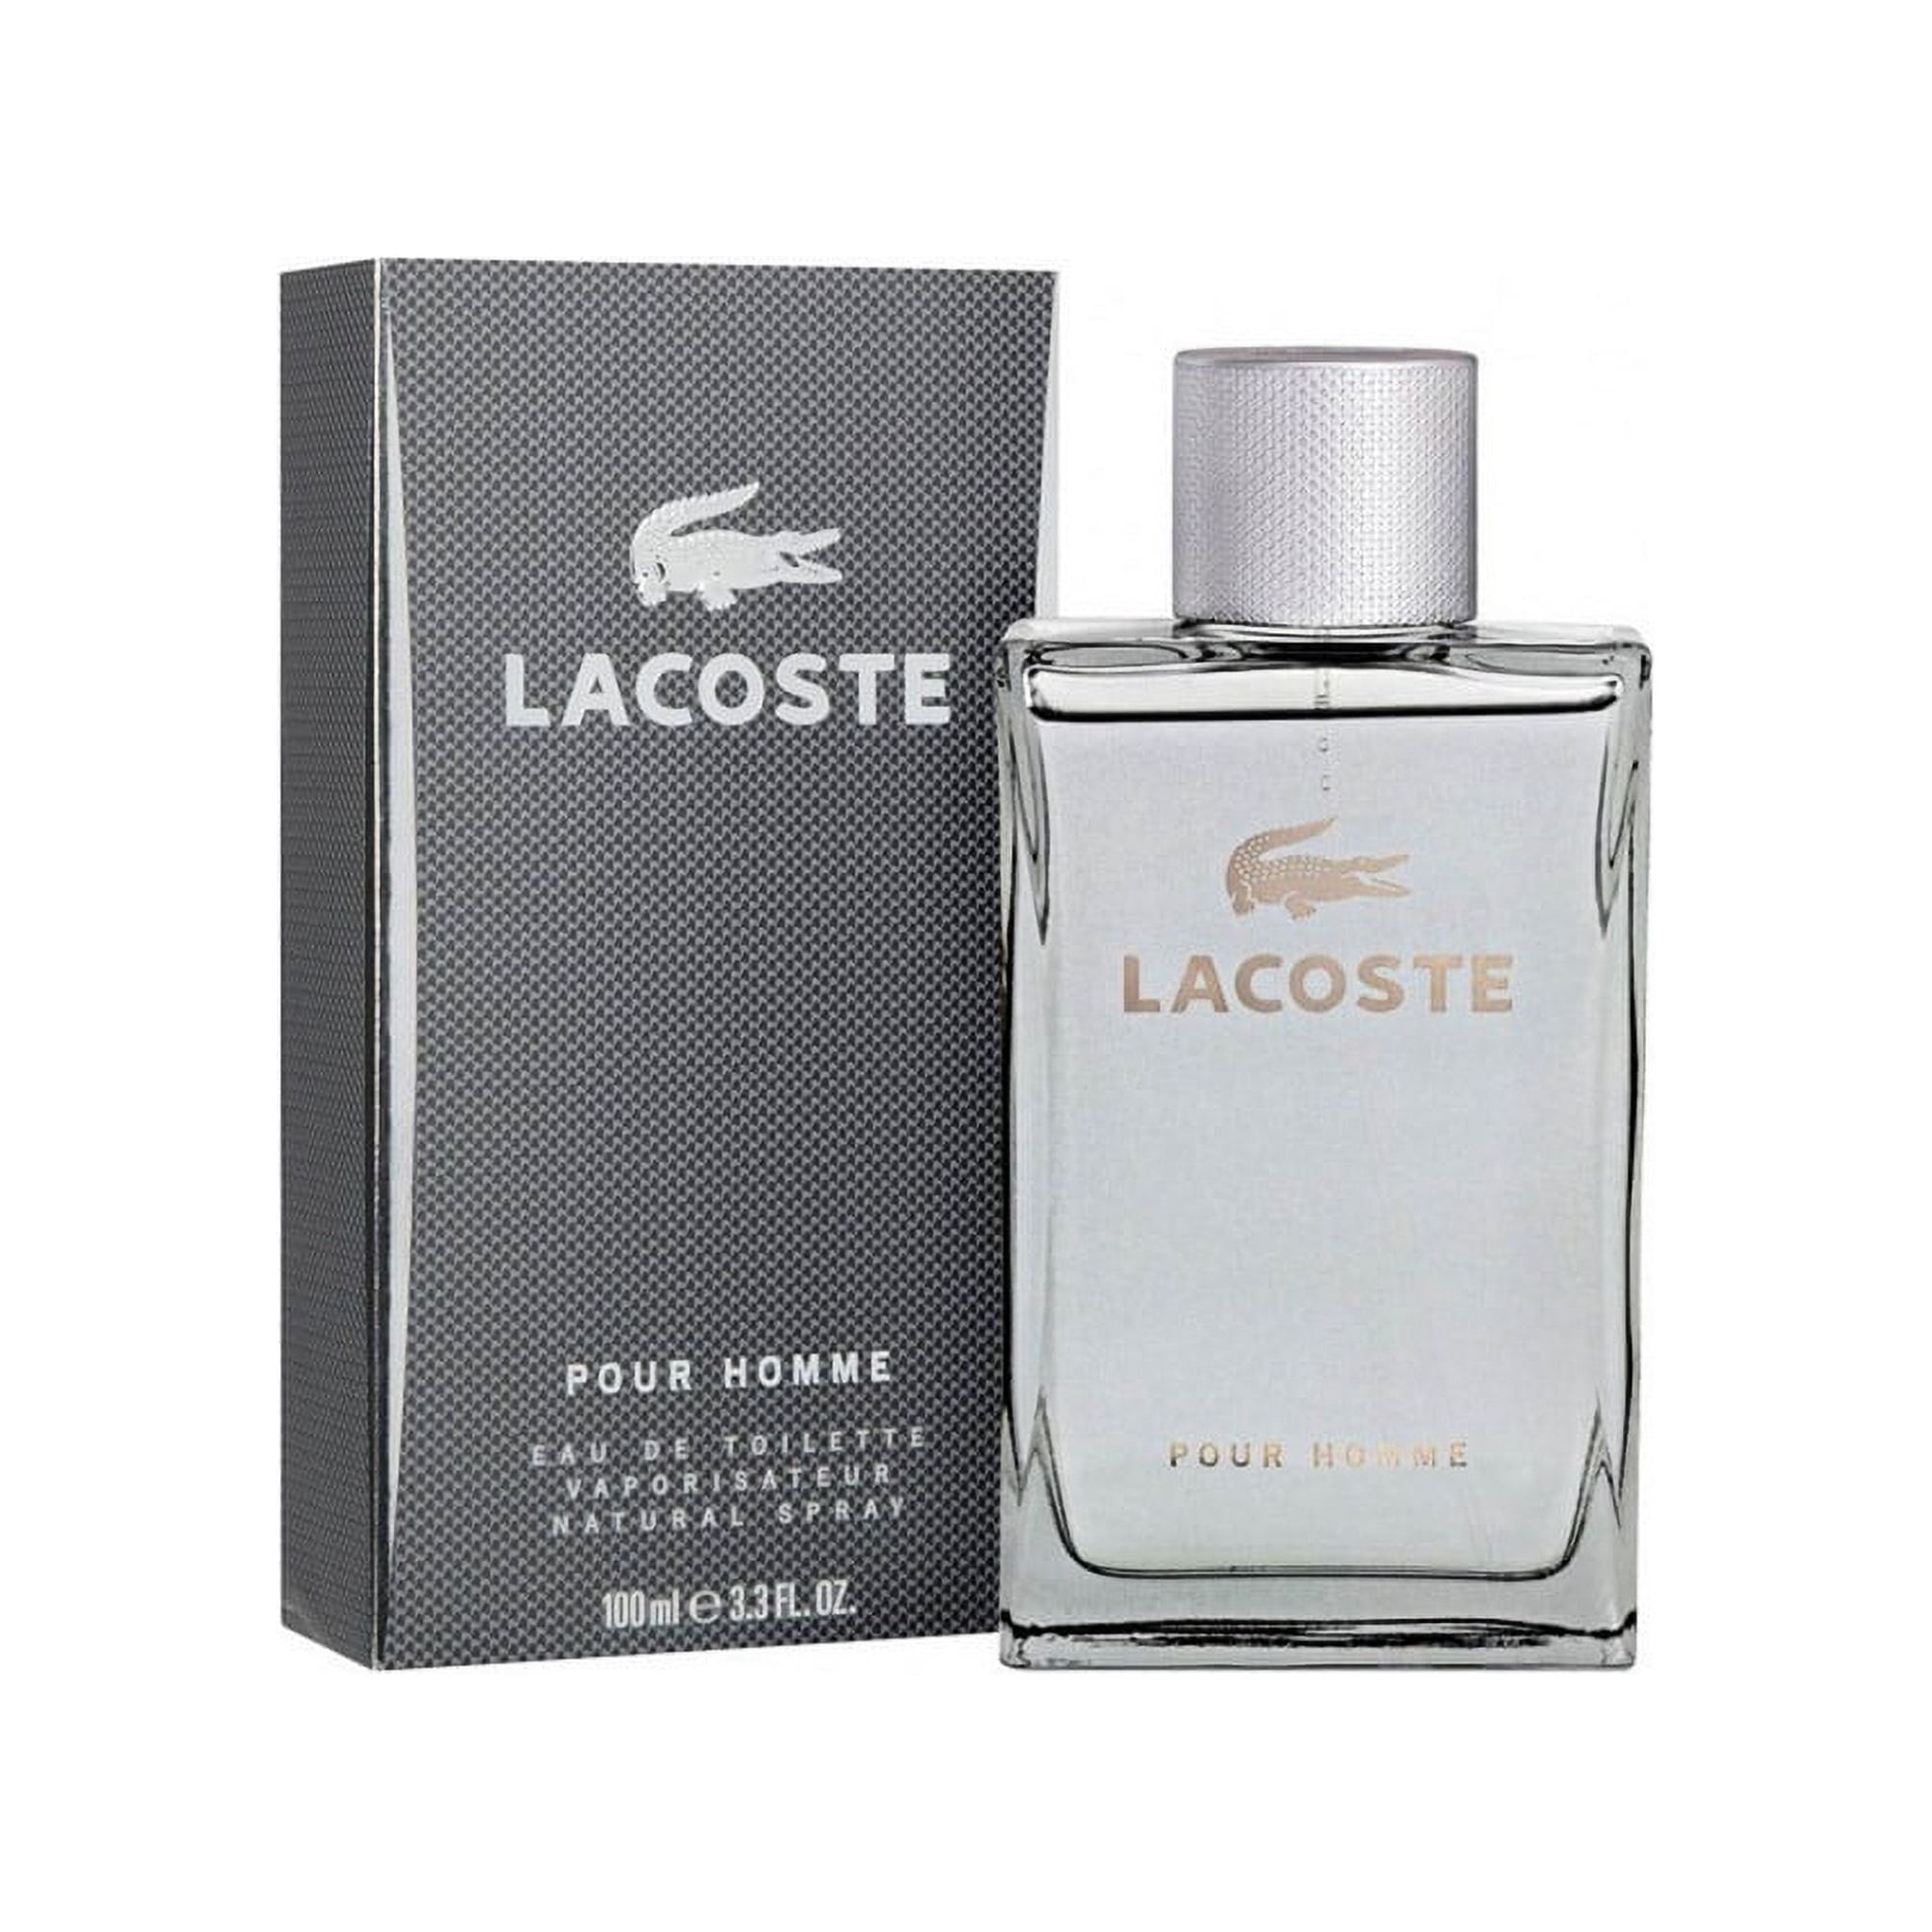 Lacoste мужская туалетная. Lacoste pour homme мужские 100 ml. Lacoste Lacoste man EDT 100. Lacoste — Lacoste pour homme (man). Lacoste pour homme от Lacoste.